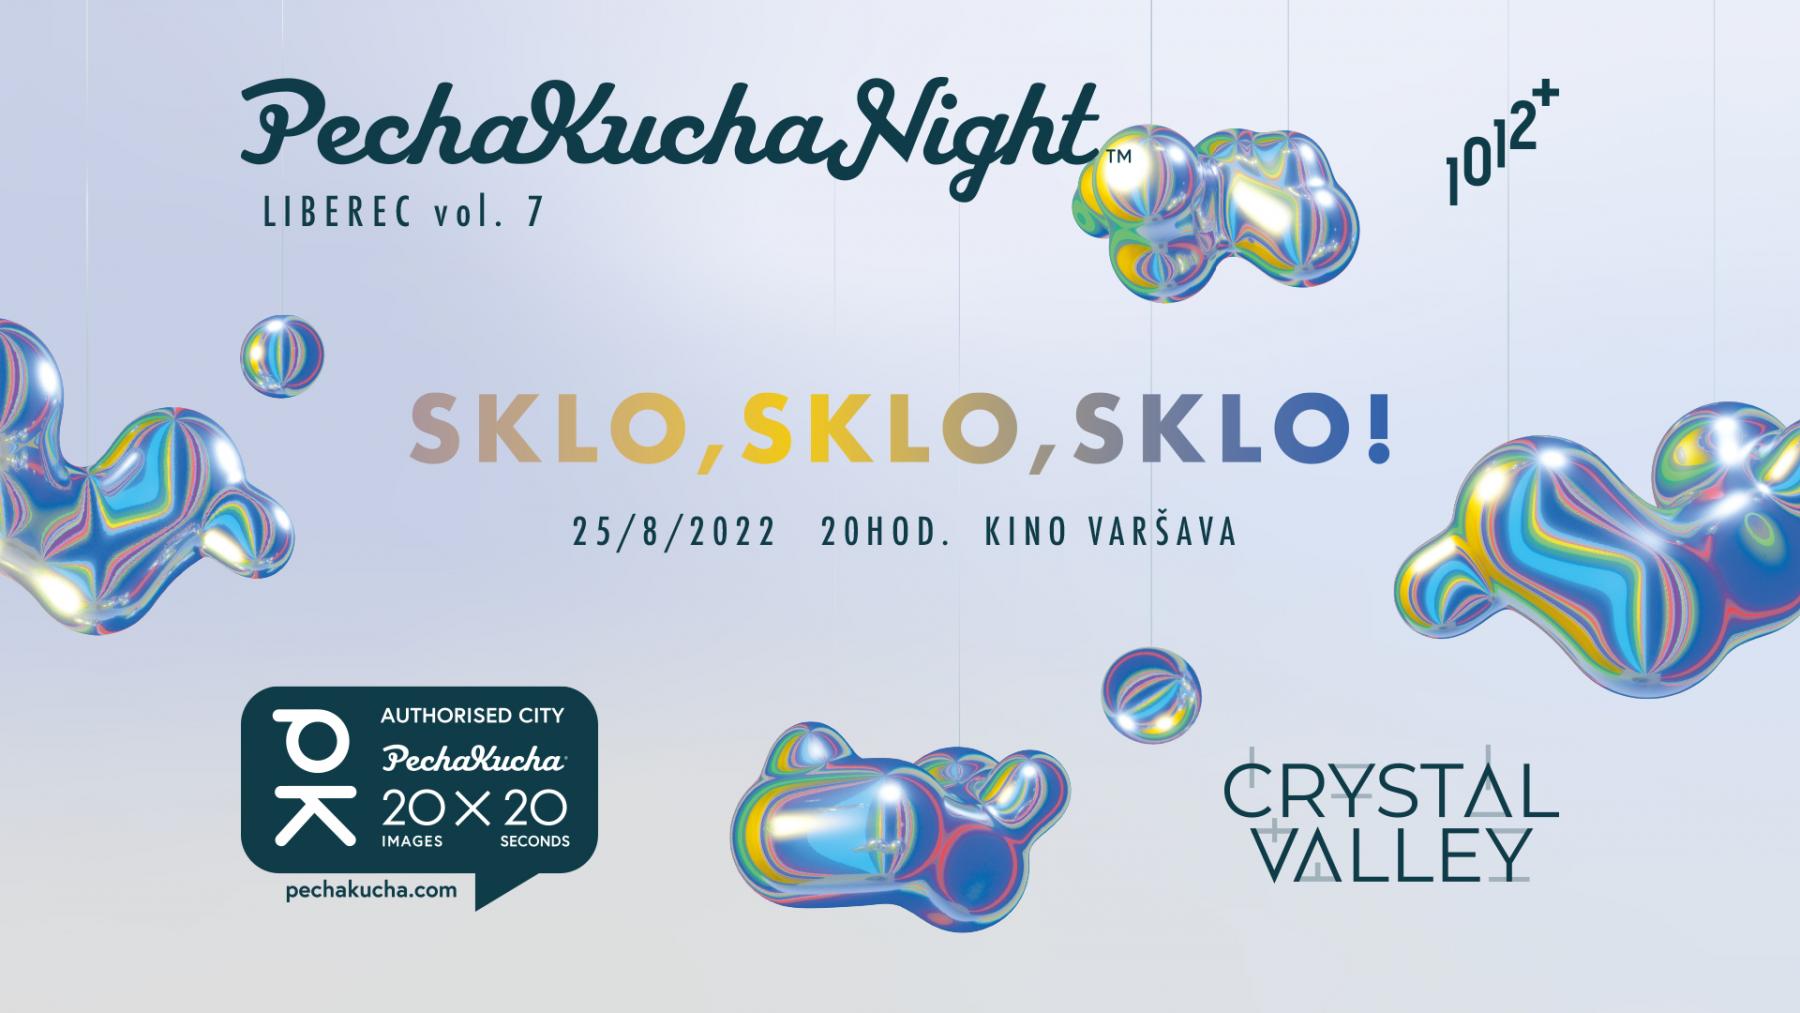 PechaKucha Night Sklo, sklo, sklo!